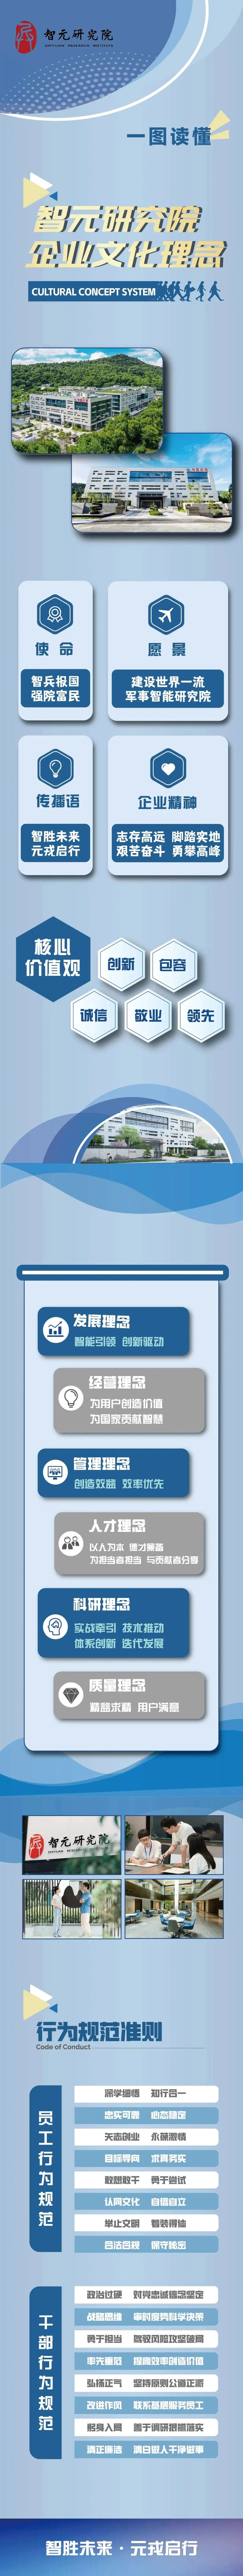 祝贺杭州智元研究院企业文化正式发布